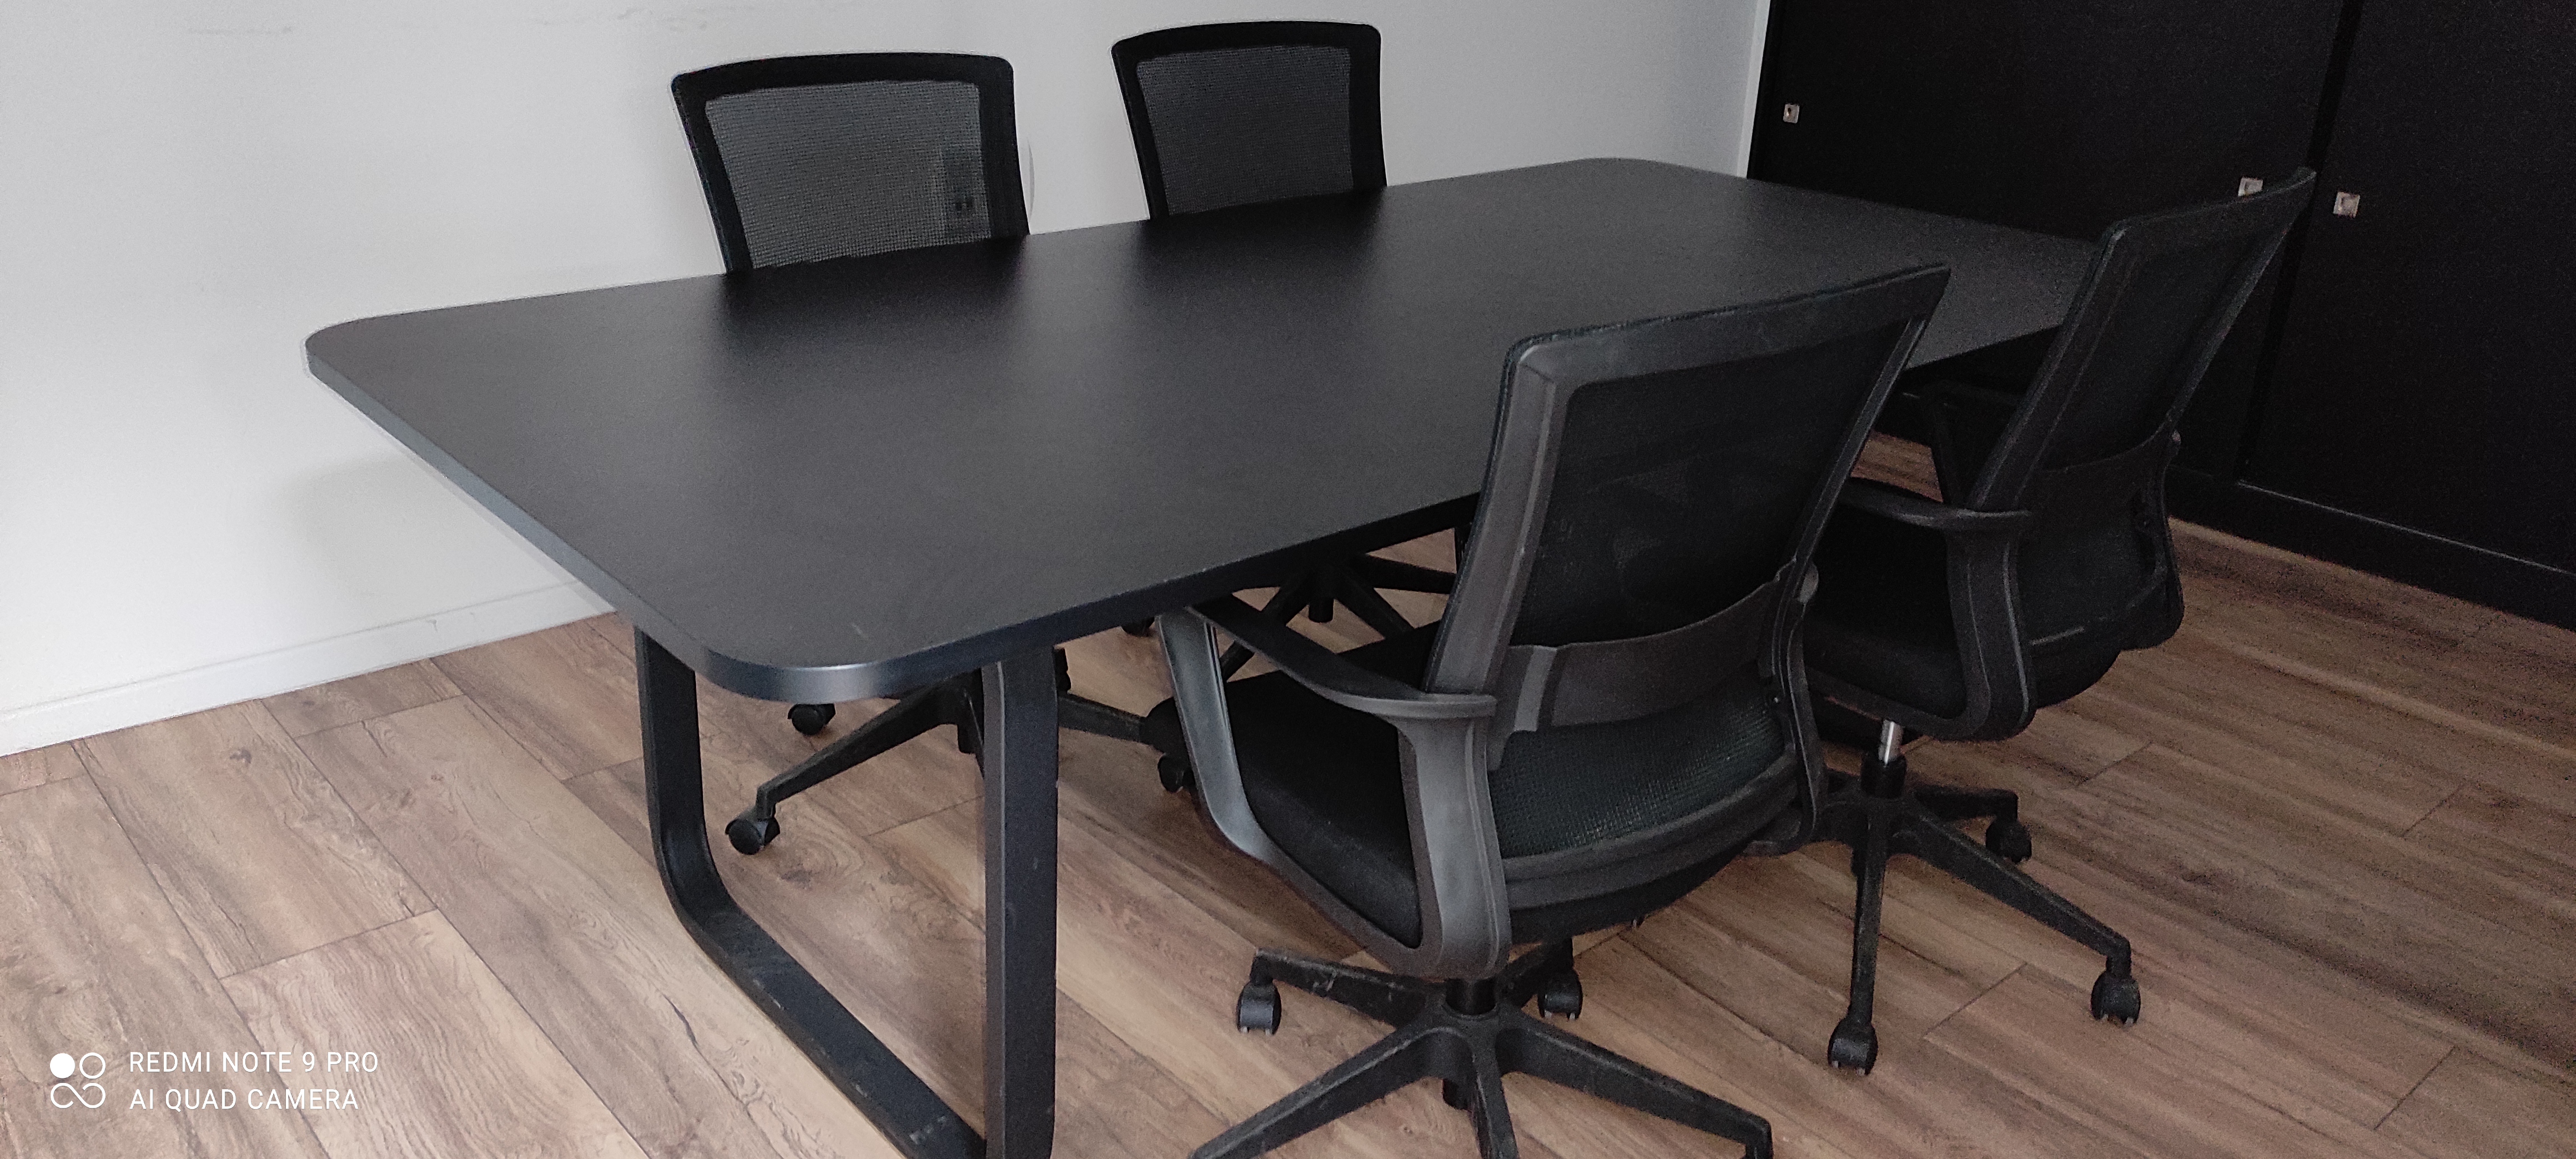 תמונה 3 ,שולחן ישיבות + שולחן מנהל למכירה בראשון לציון ציוד משרדי  ריהוט משרדי